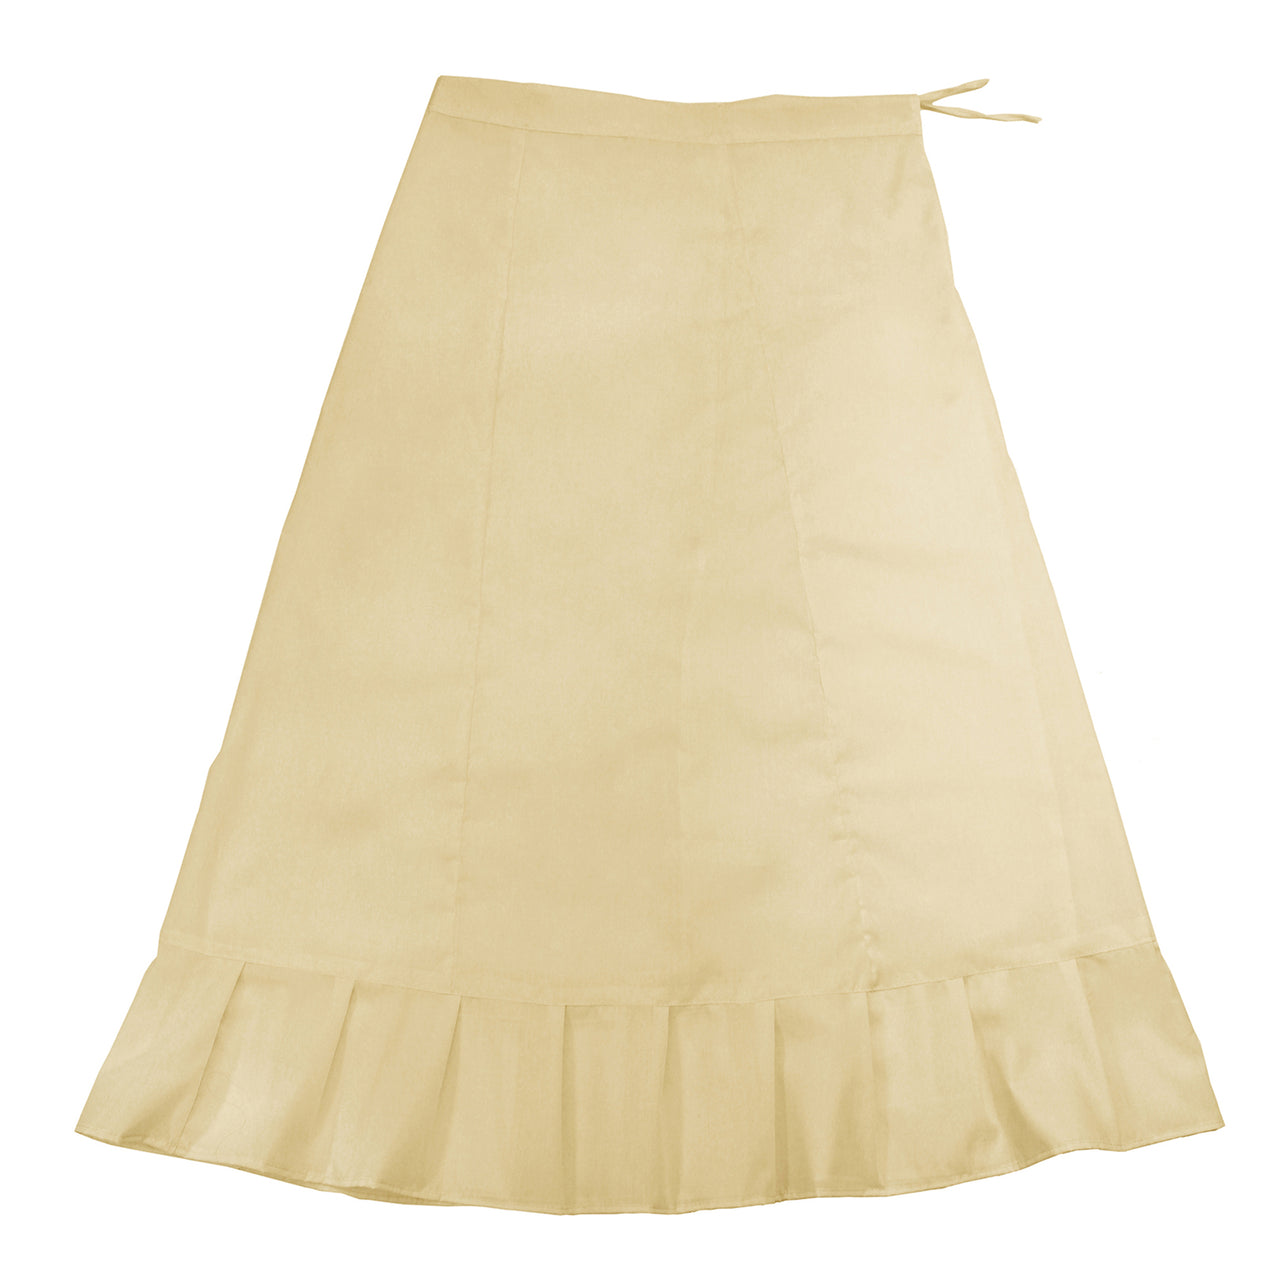 Cream - Sari (Saree) Petticoat - Available in S, M, L & XL - Underskirts For Sari's